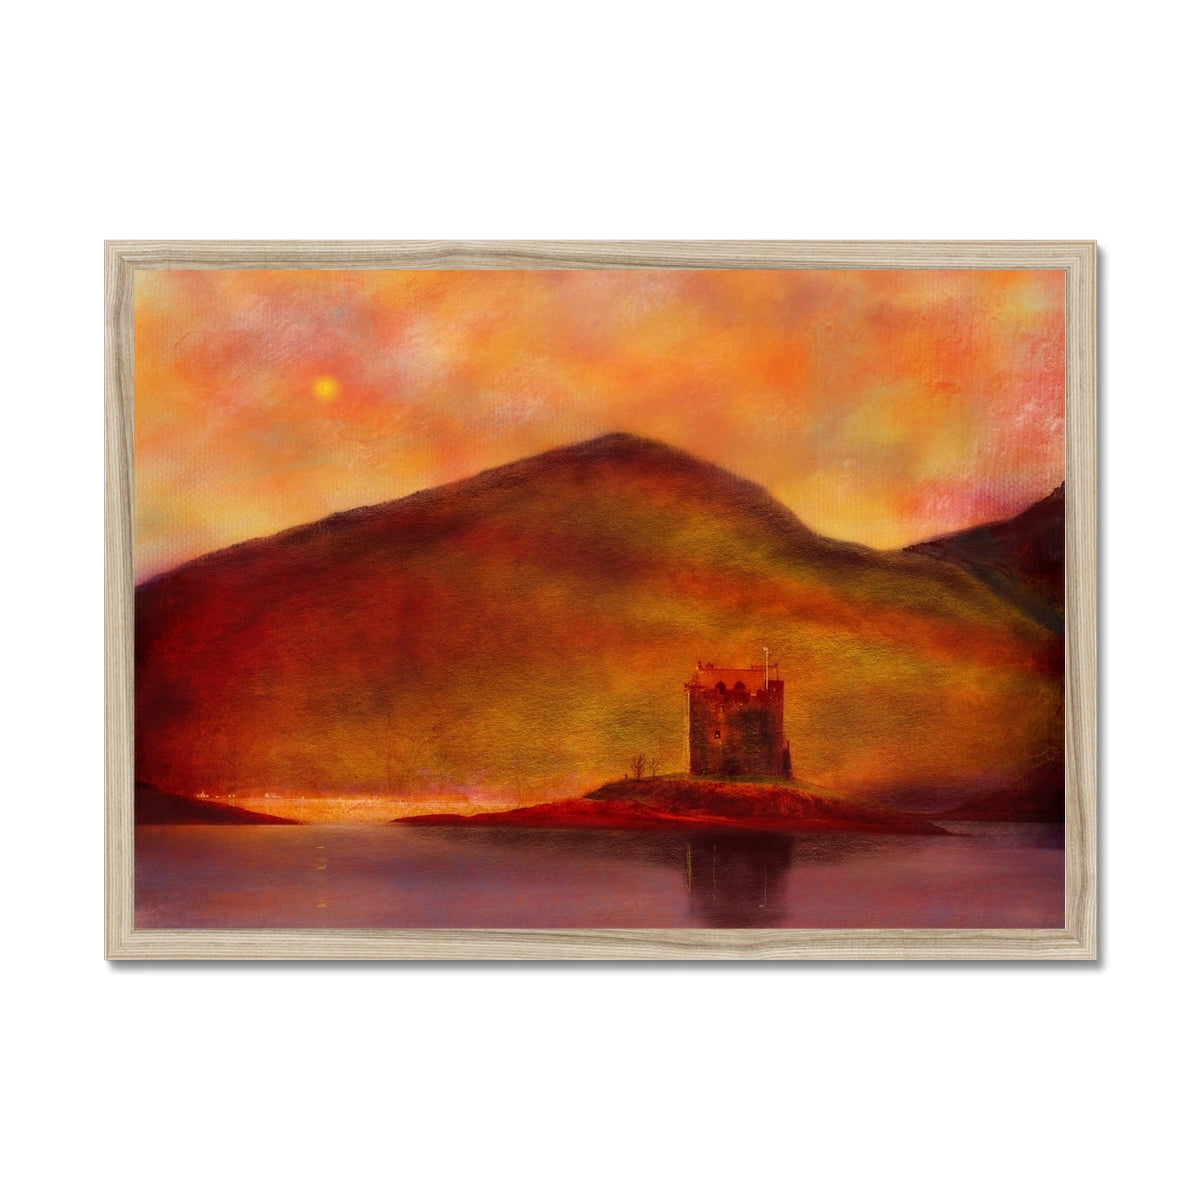 Castle Stalker Sunset Painting | Framed Prints From Scotland-Framed Prints-Historic & Iconic Scotland Art Gallery-A2 Landscape-Natural Frame-Paintings, Prints, Homeware, Art Gifts From Scotland By Scottish Artist Kevin Hunter